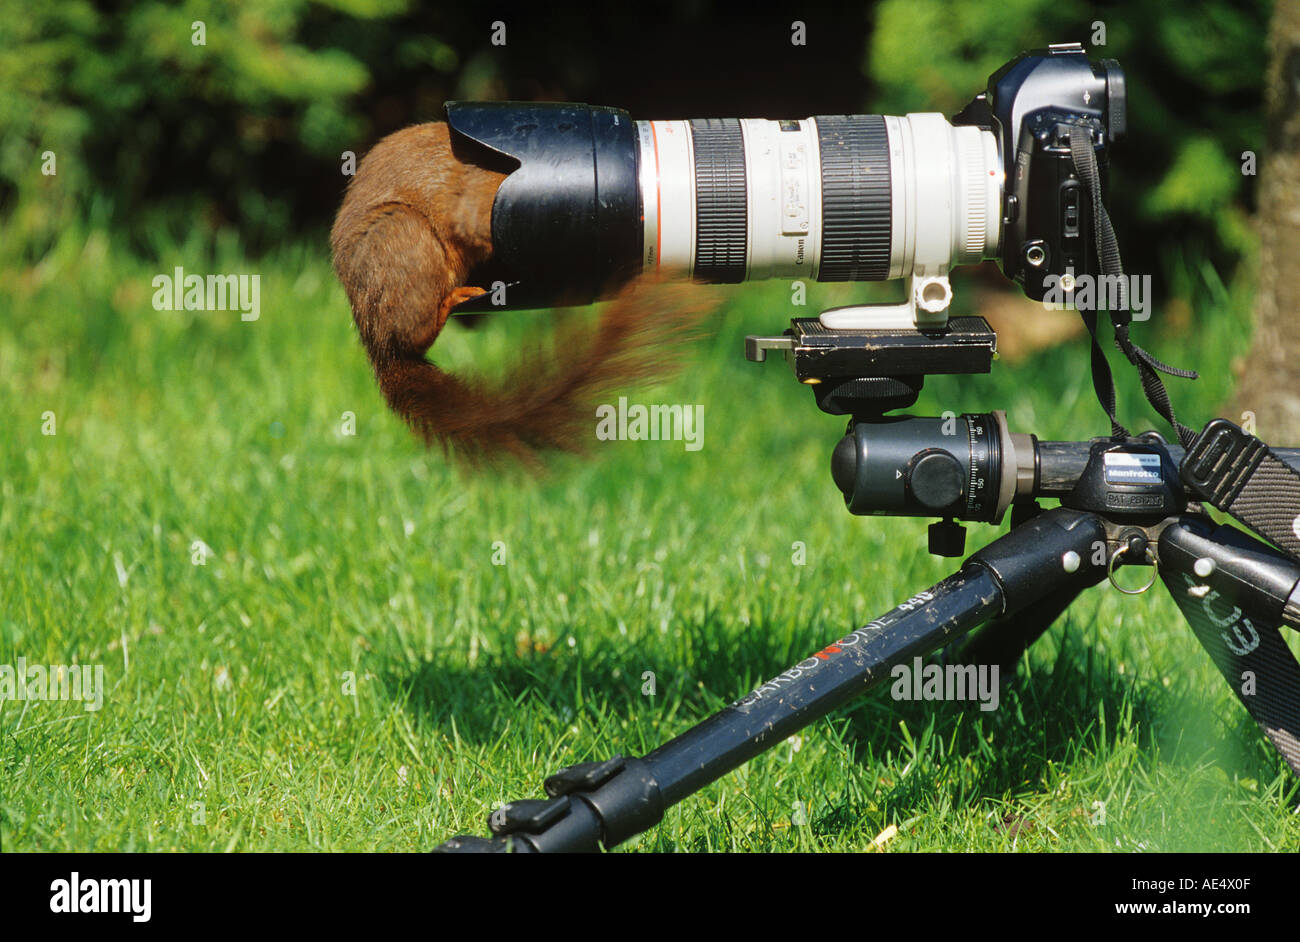 Ardilla Roja (Sciurus vulgaris) investigando una cámara. Alemania Foto de stock